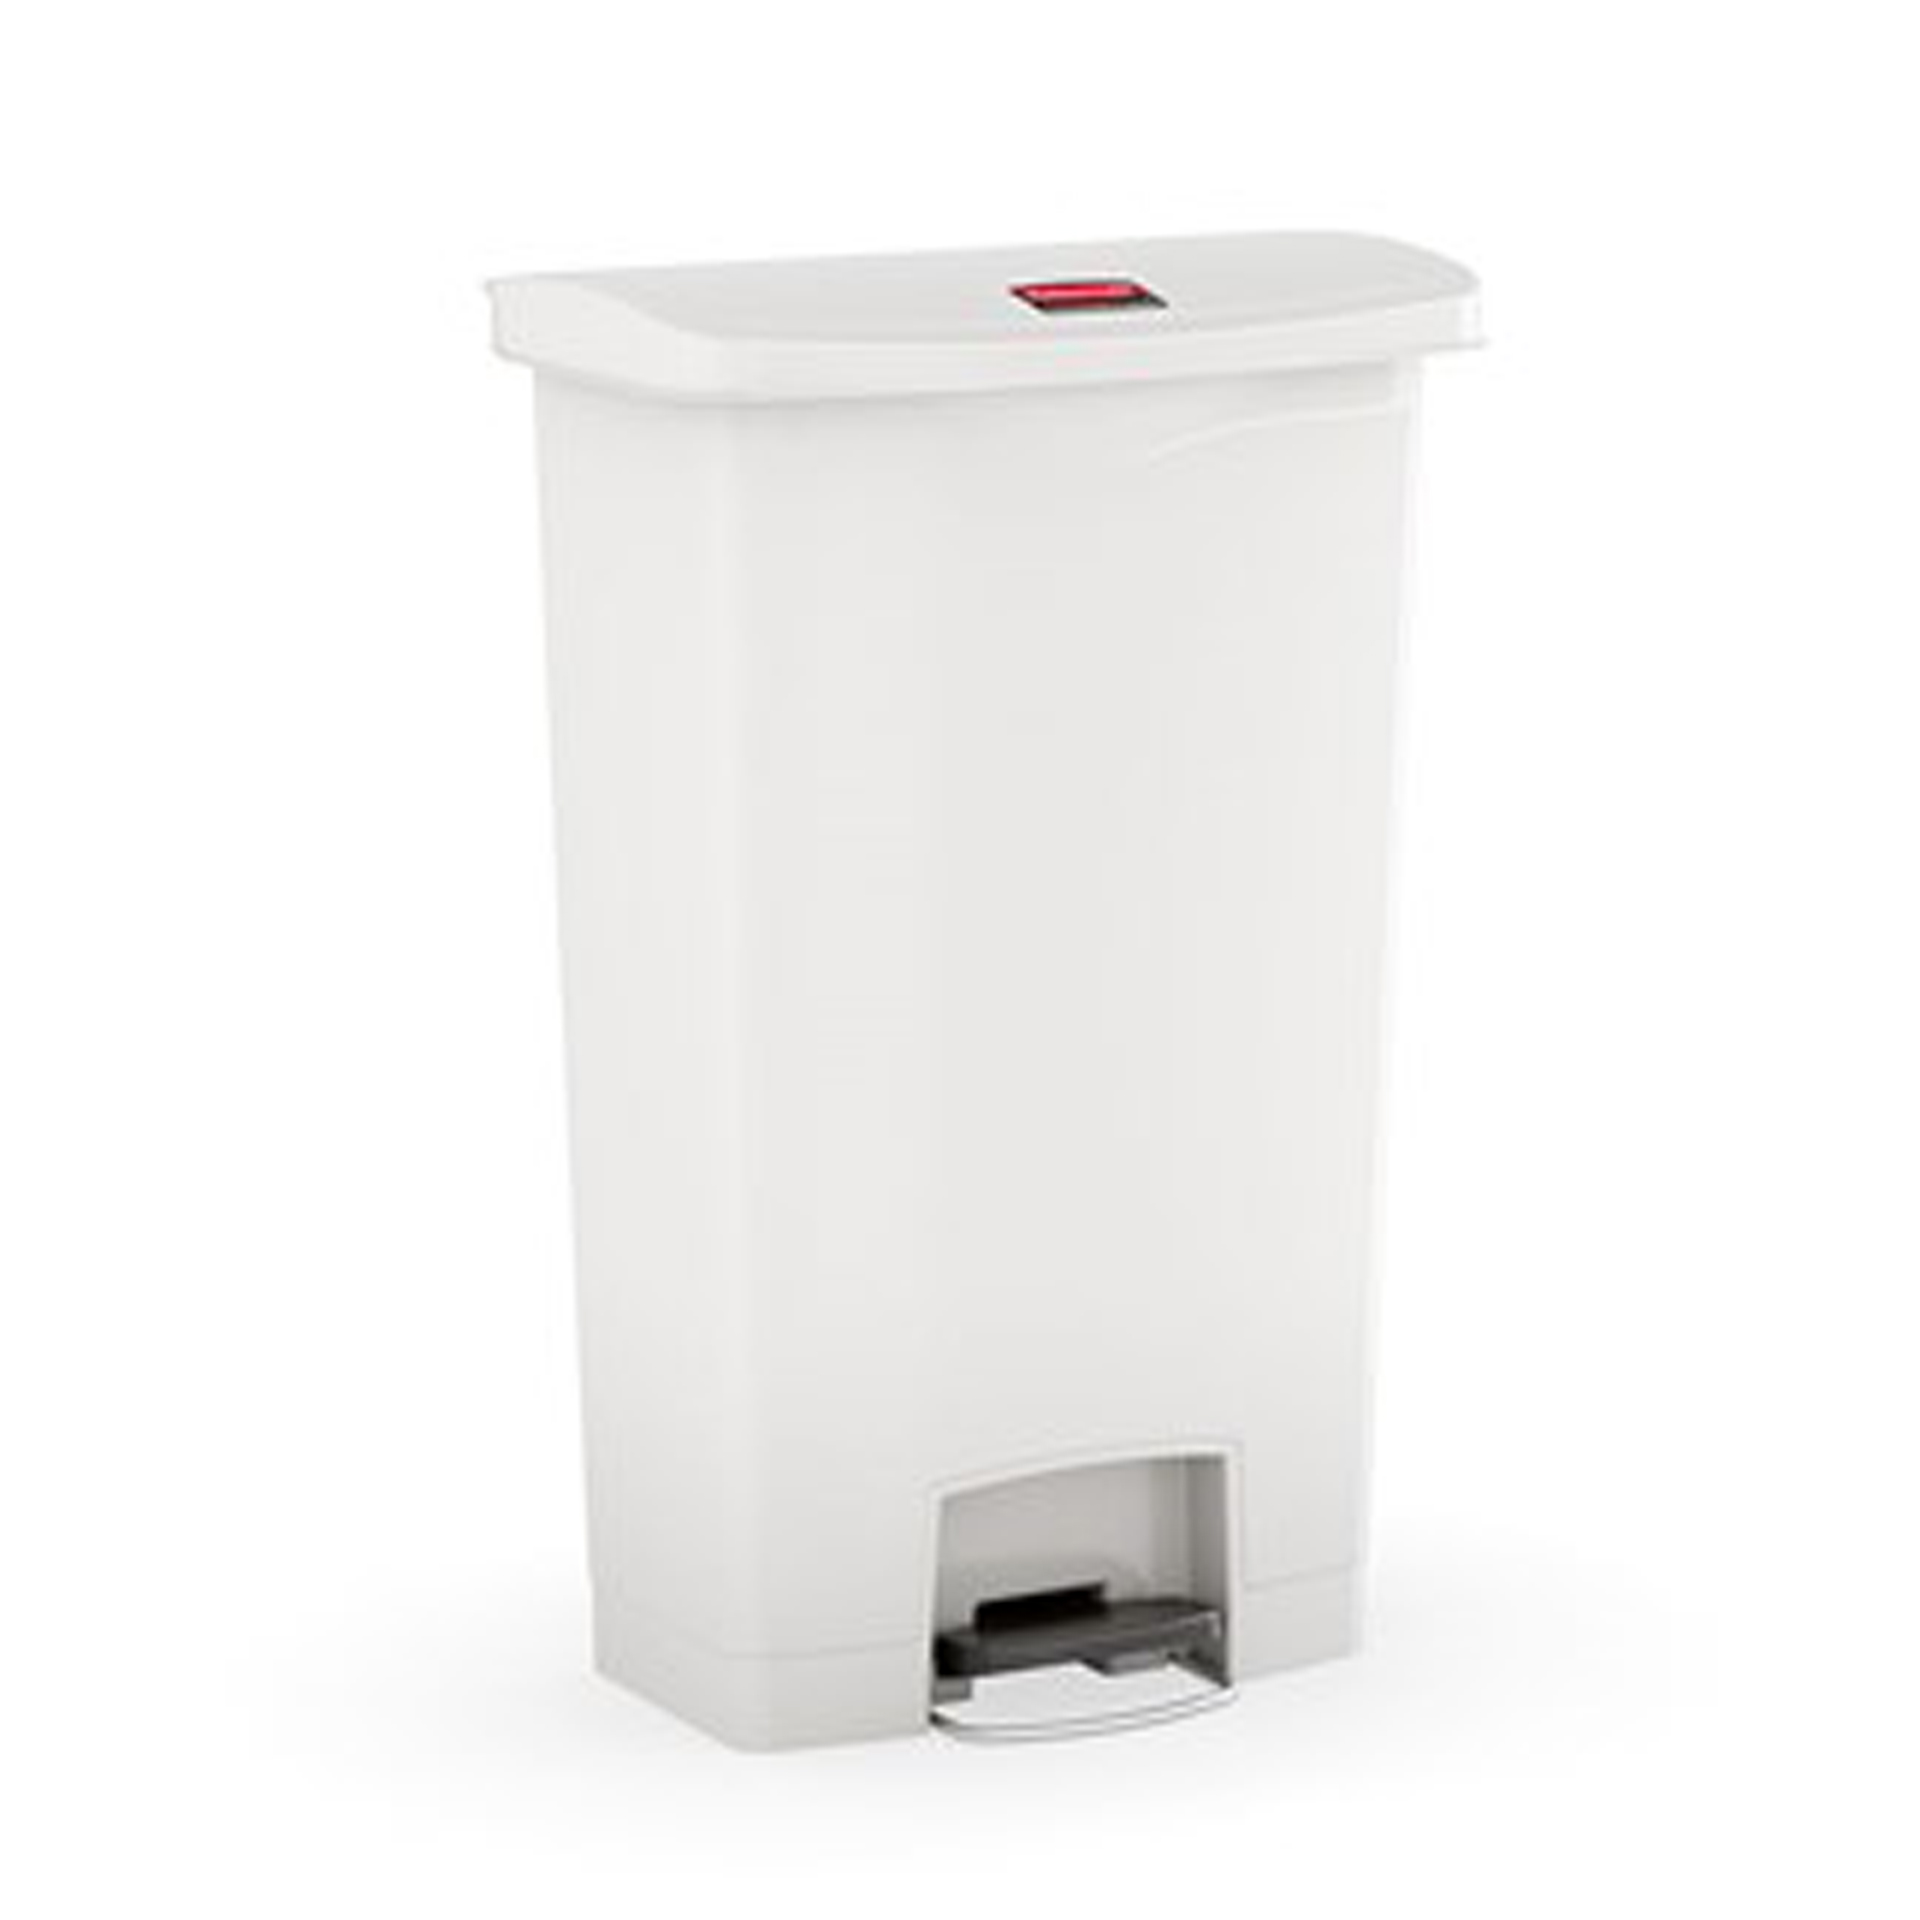 ถังขยะแบบเท้าเหยียบ Slim Jim® Step-On Container ขนาด 30 ลิตร สีขาว